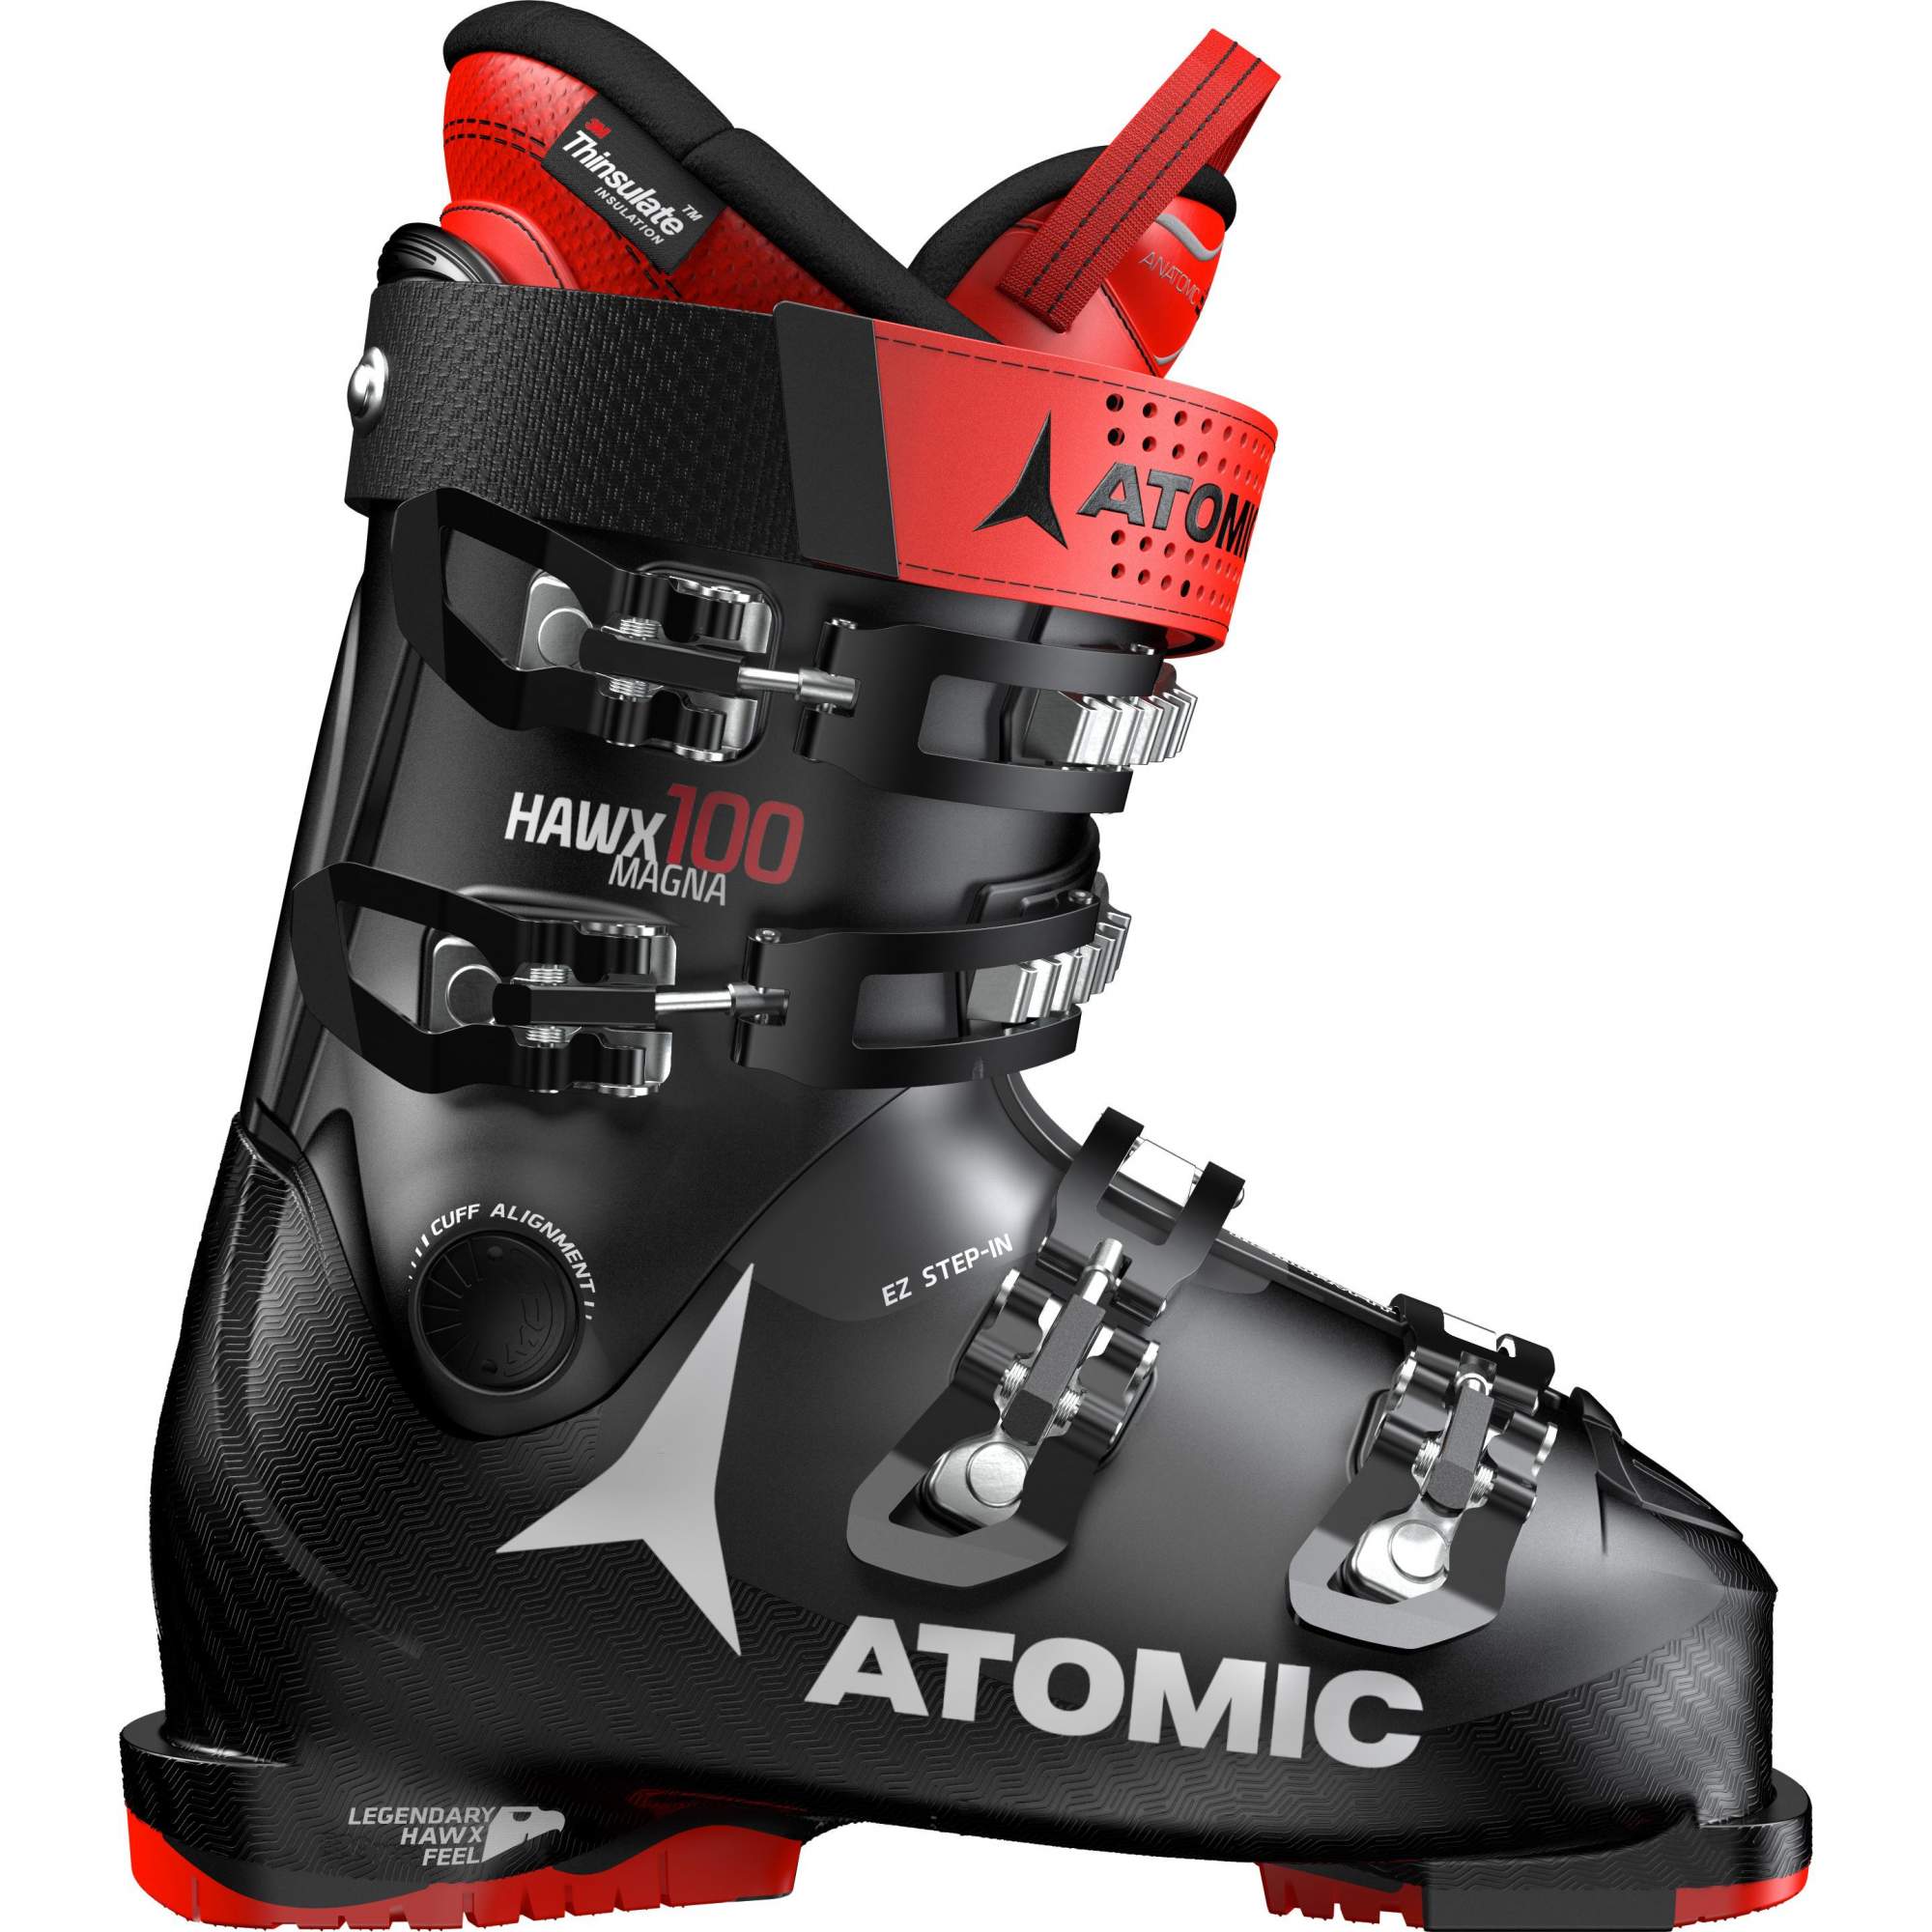 Горнолыжные ботинки Atomic Hawx Magna 100 2020, black/red, 29.5